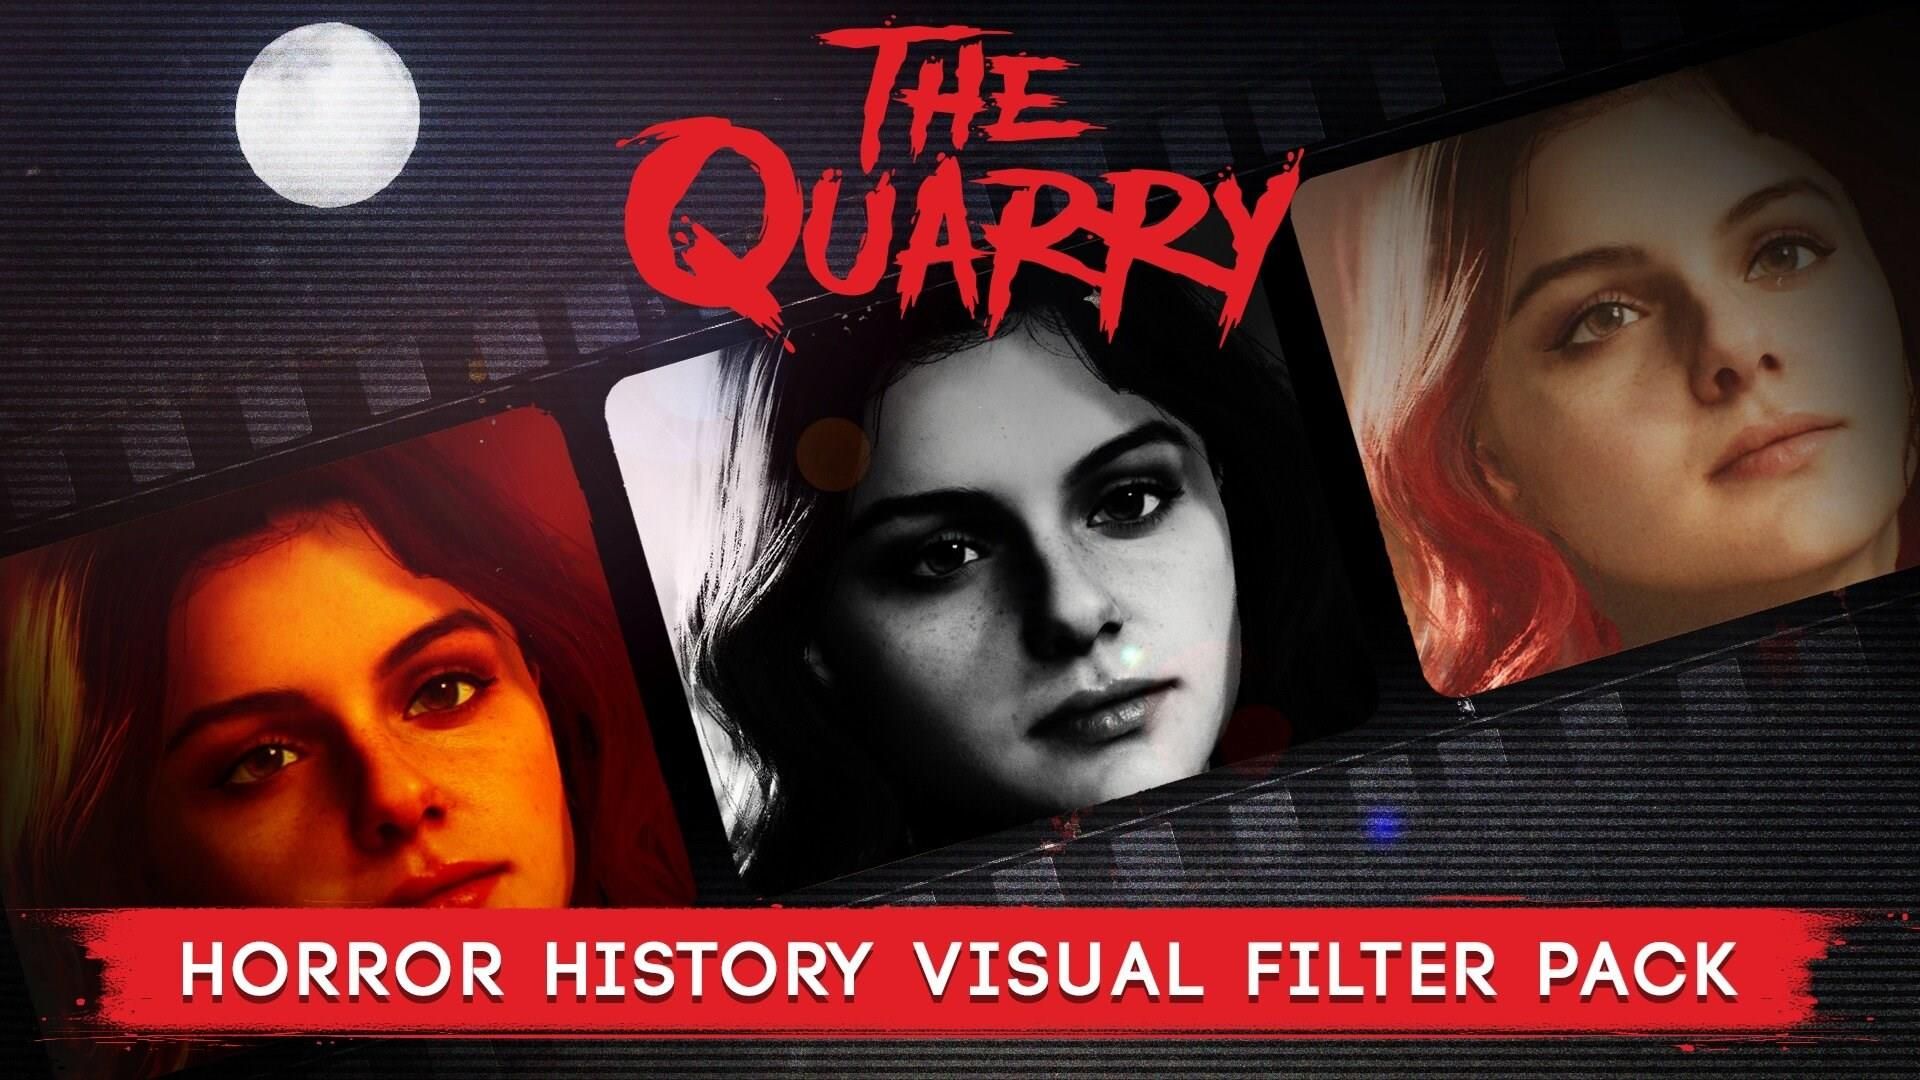 The Quarry (Gra PS5)